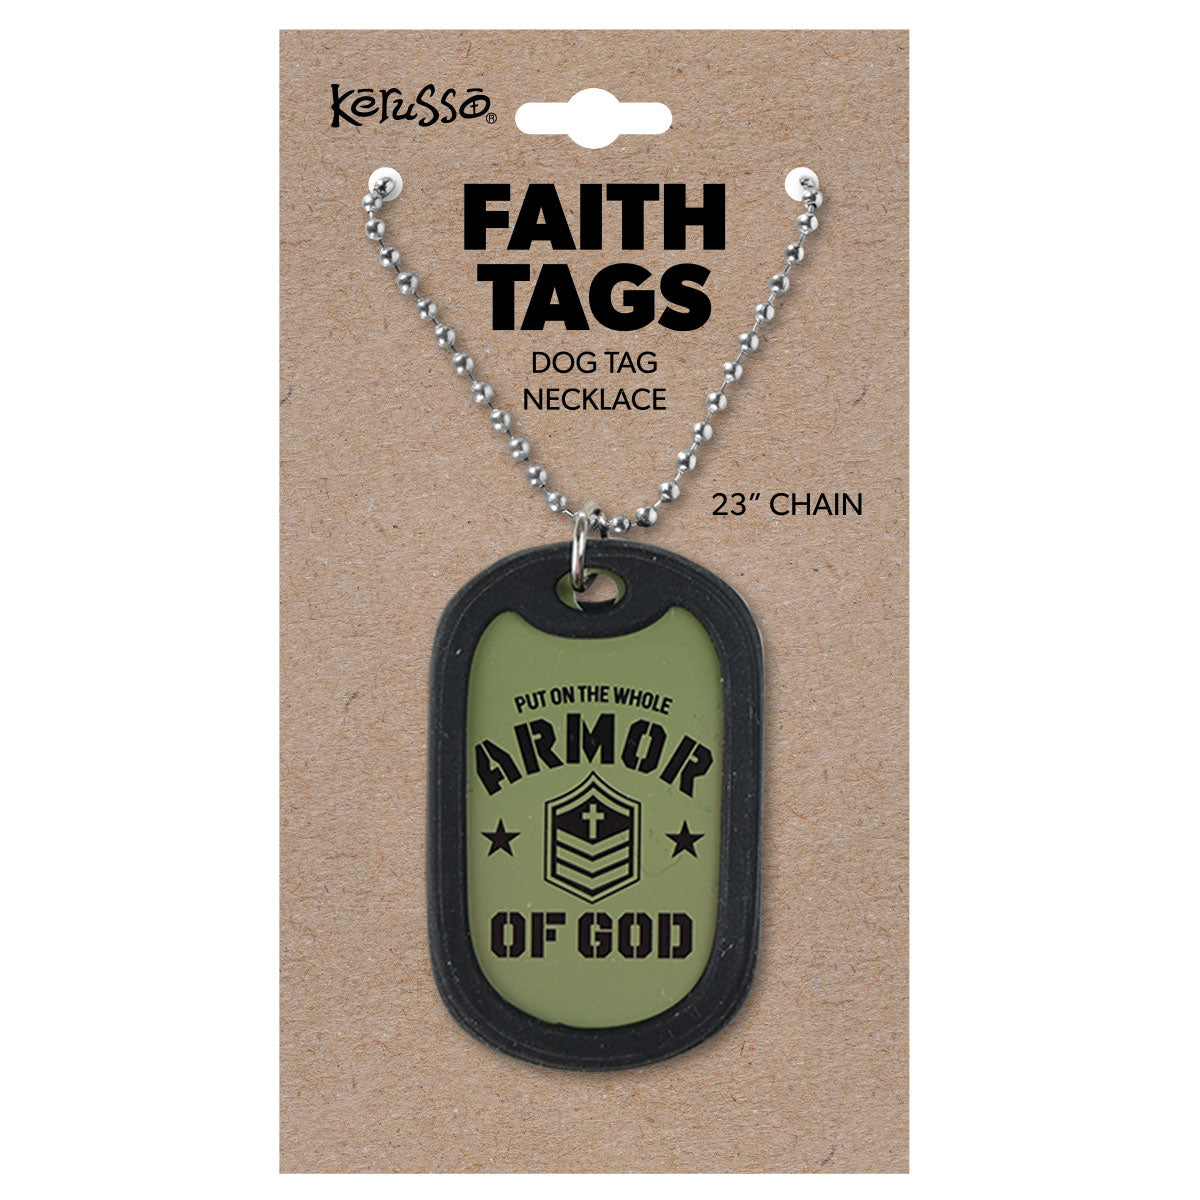 Faith Gear Dogtag Necklace Armor Of God